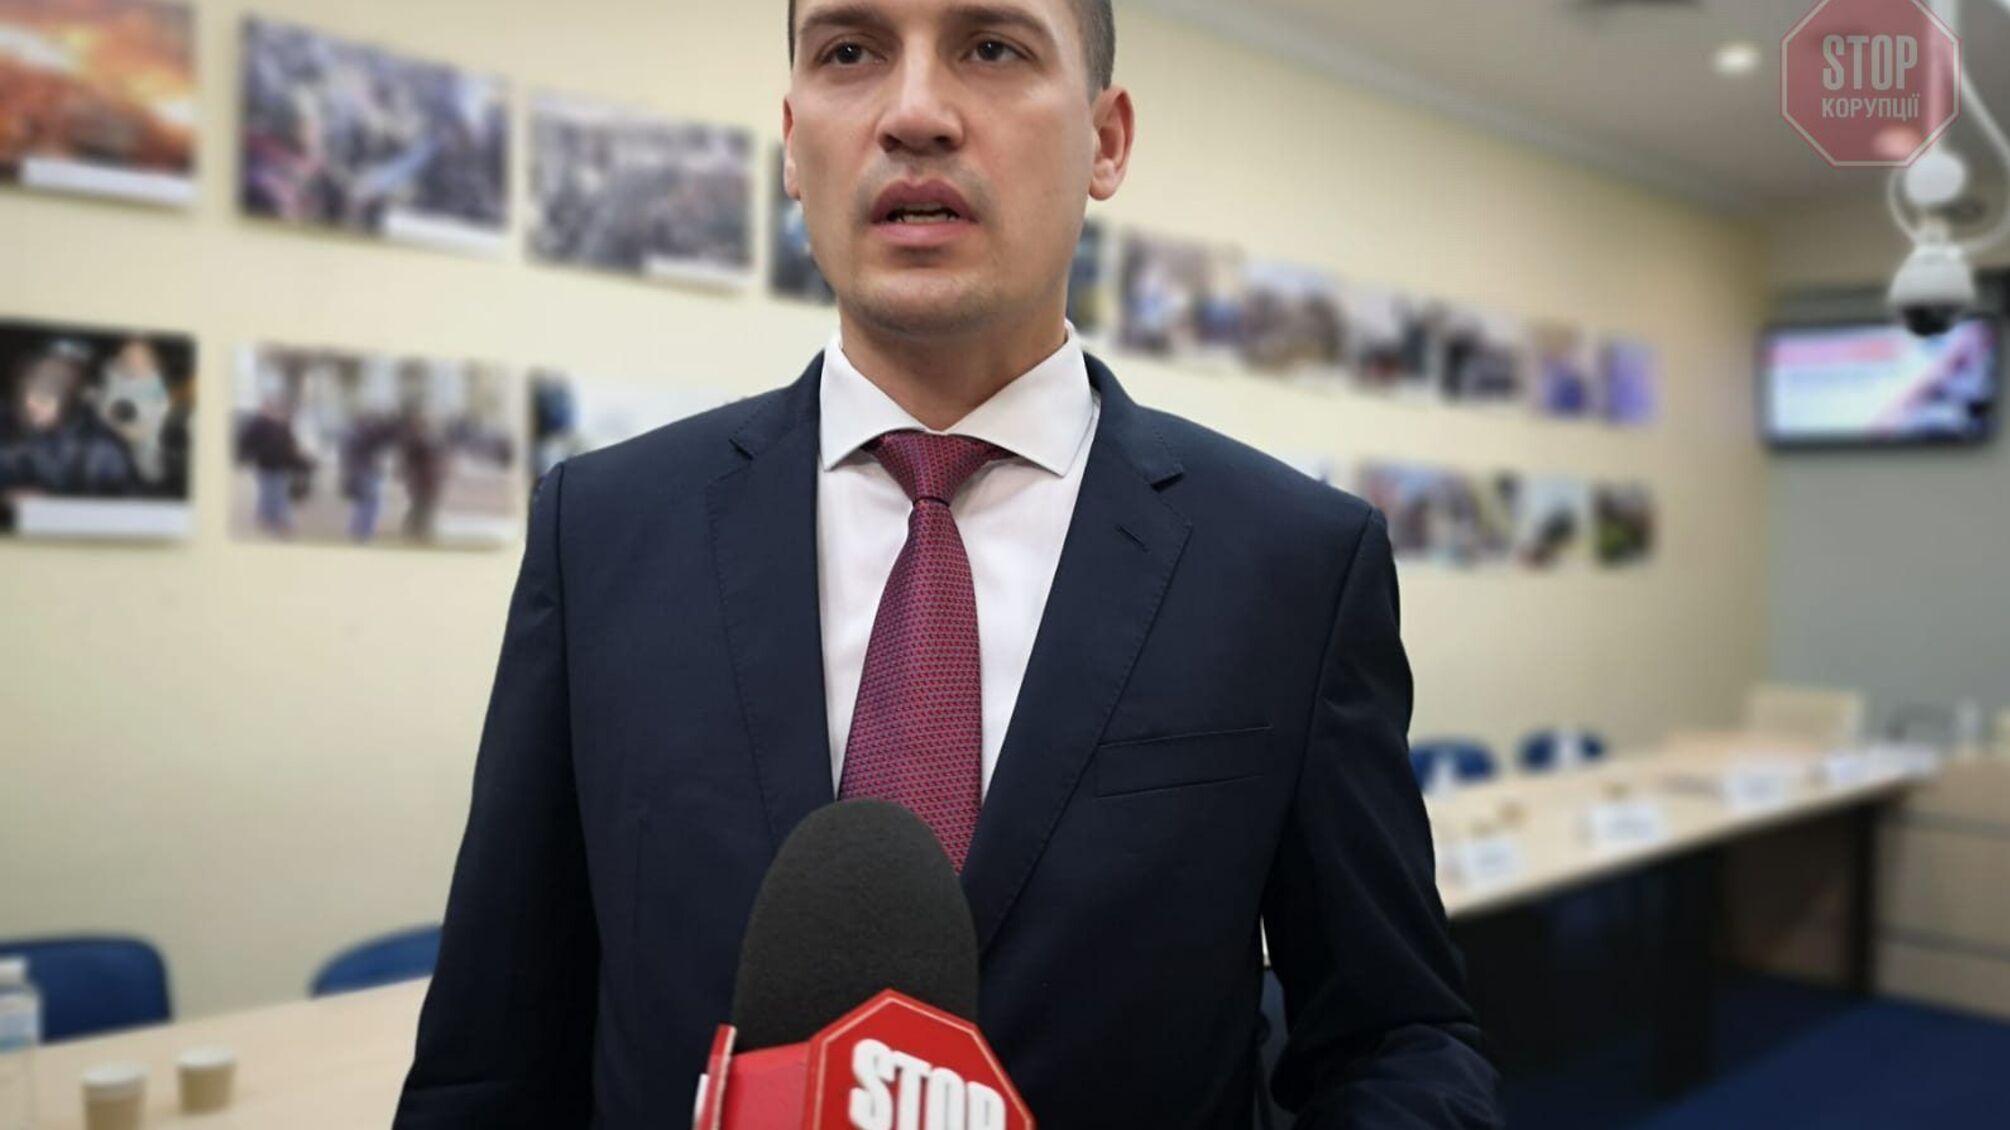 З початку року в Україні зафіксували 153 випадки порушень свободи слова, — Офіс генпрокурора